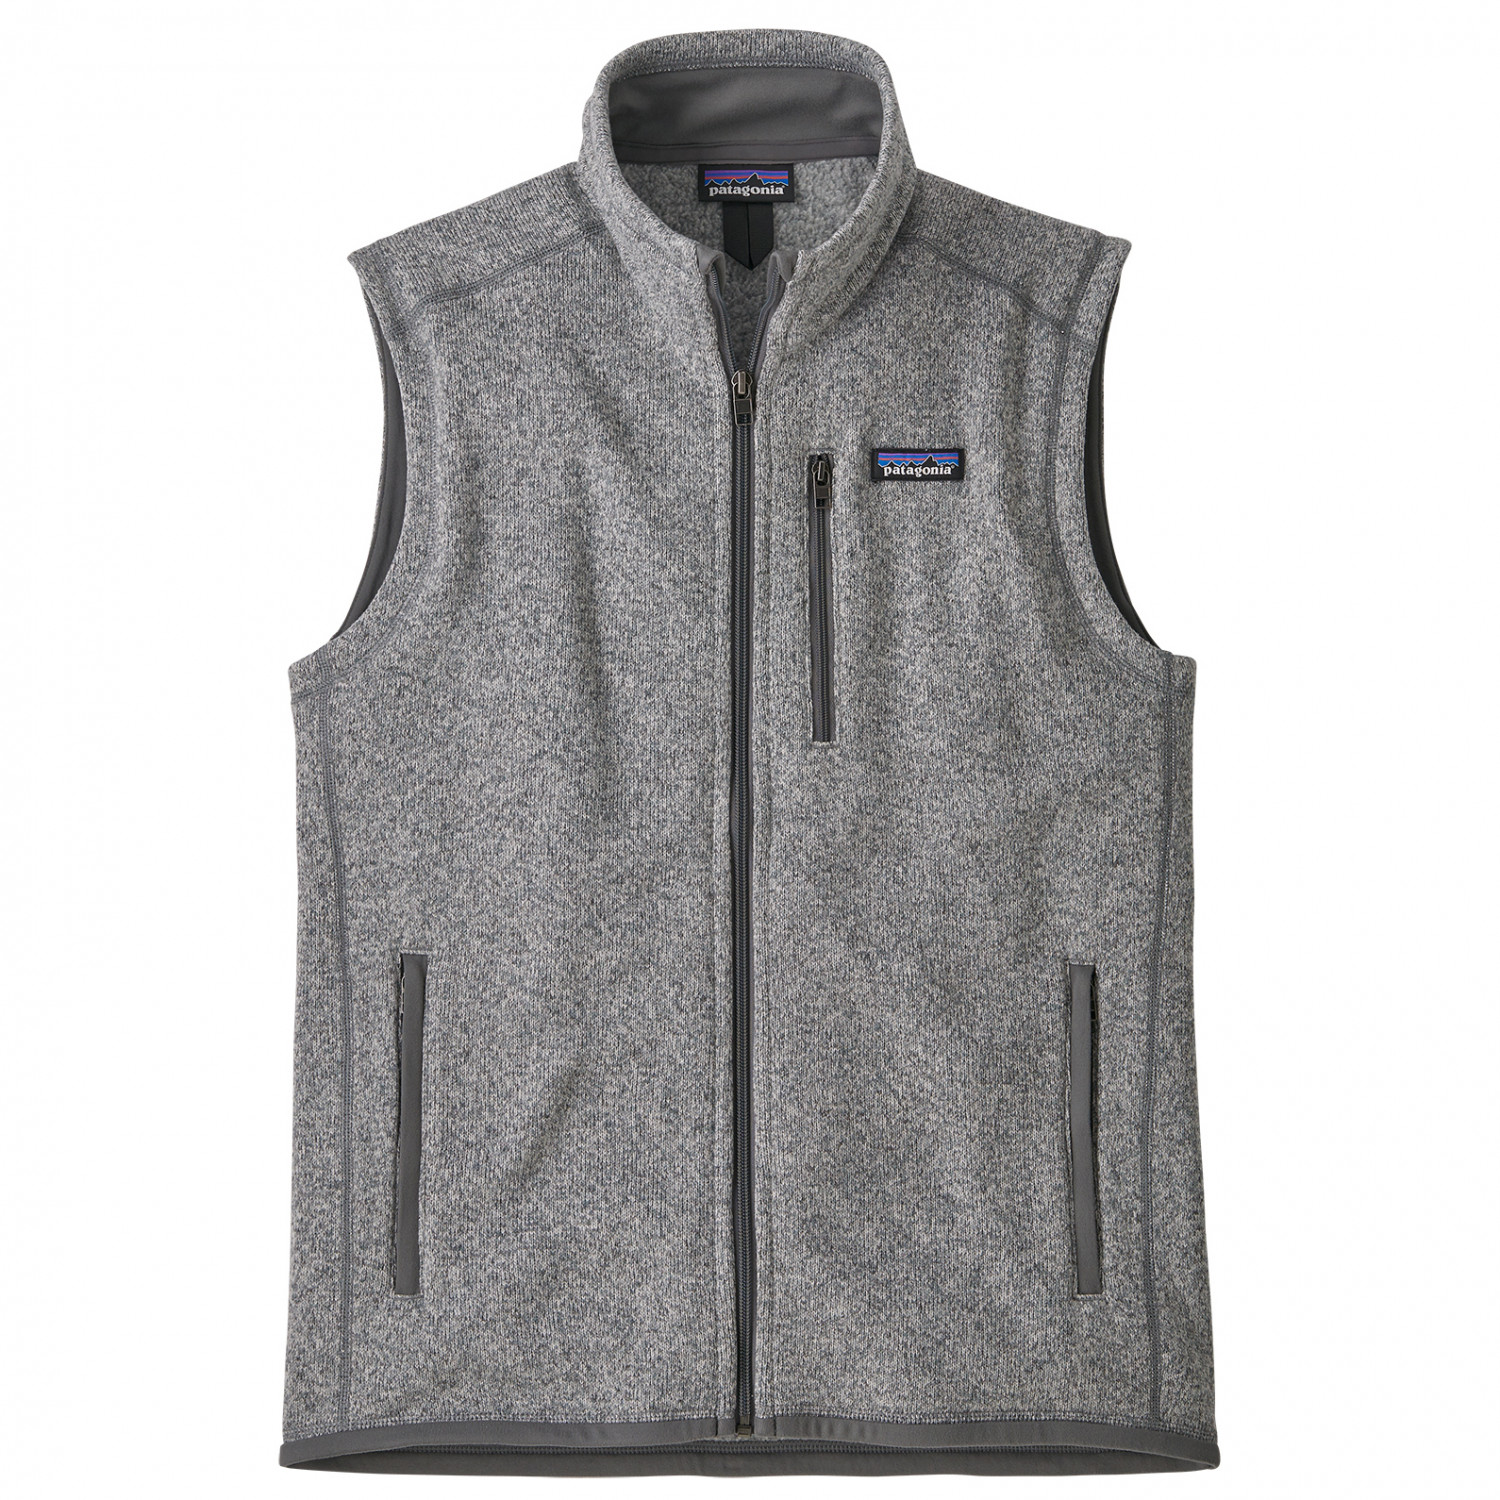 Жилет из синтетического волокна Patagonia Better Vest, цвет Stonewash жилет из синтетического волокна tentree puffer vest цвет meteorite black